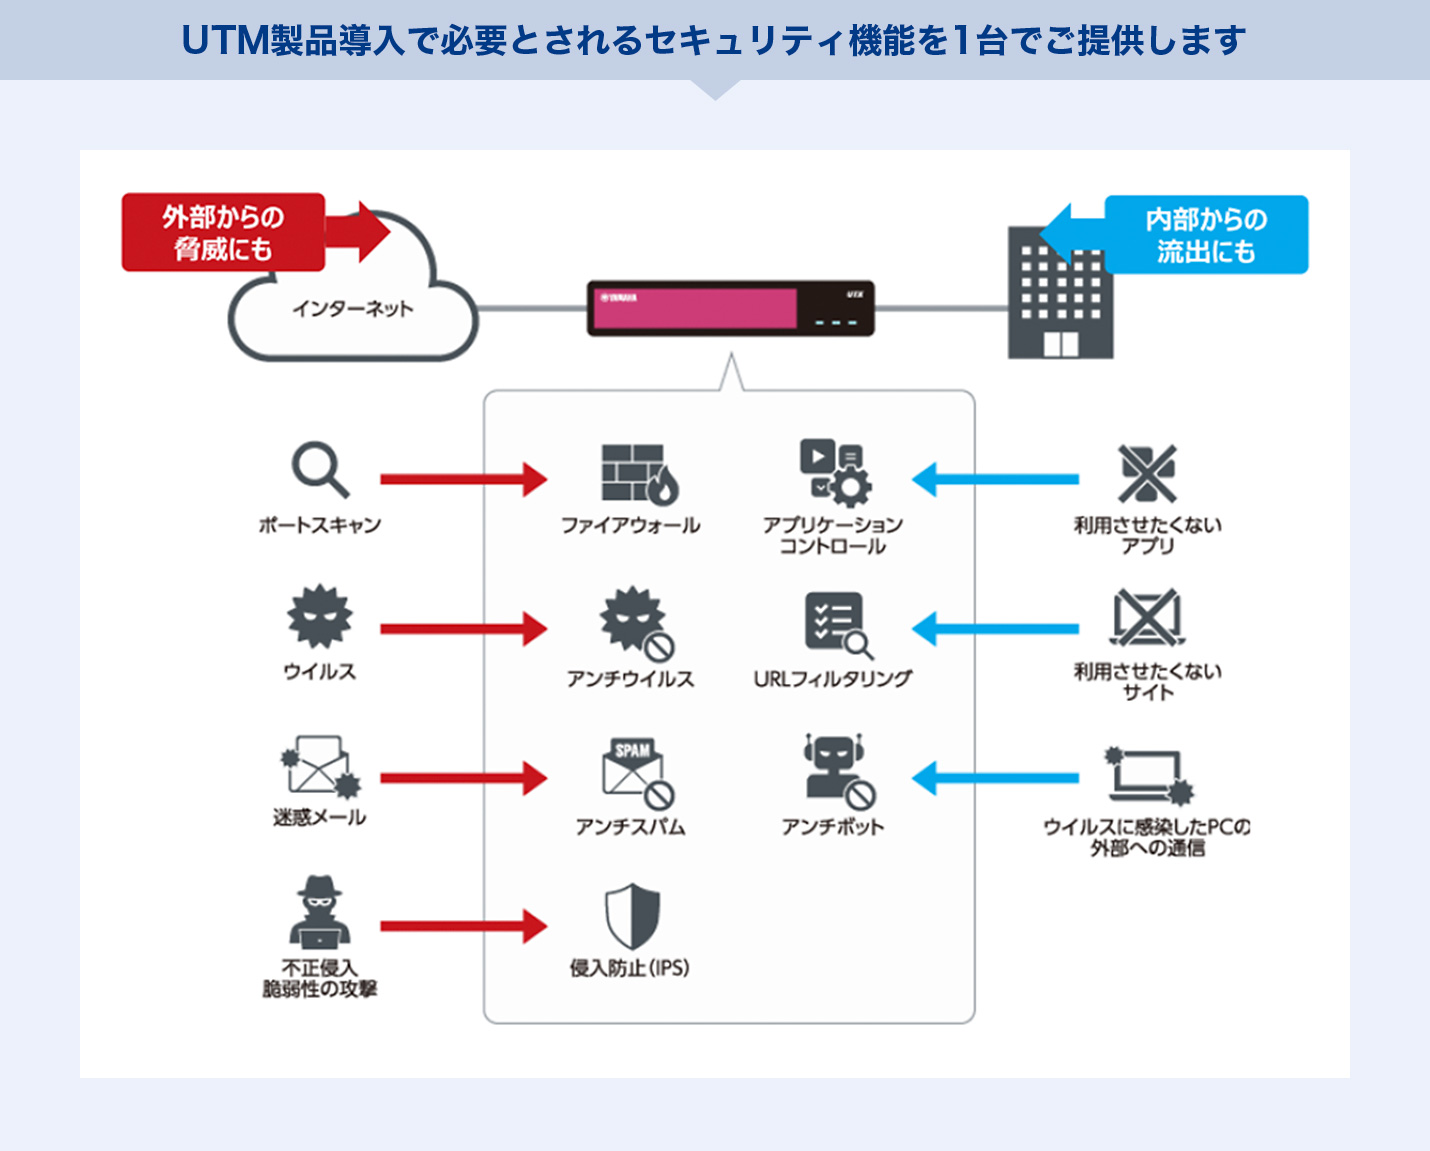 UTM製品導入で必要とされるセキュリティ機能を1台でご提供します